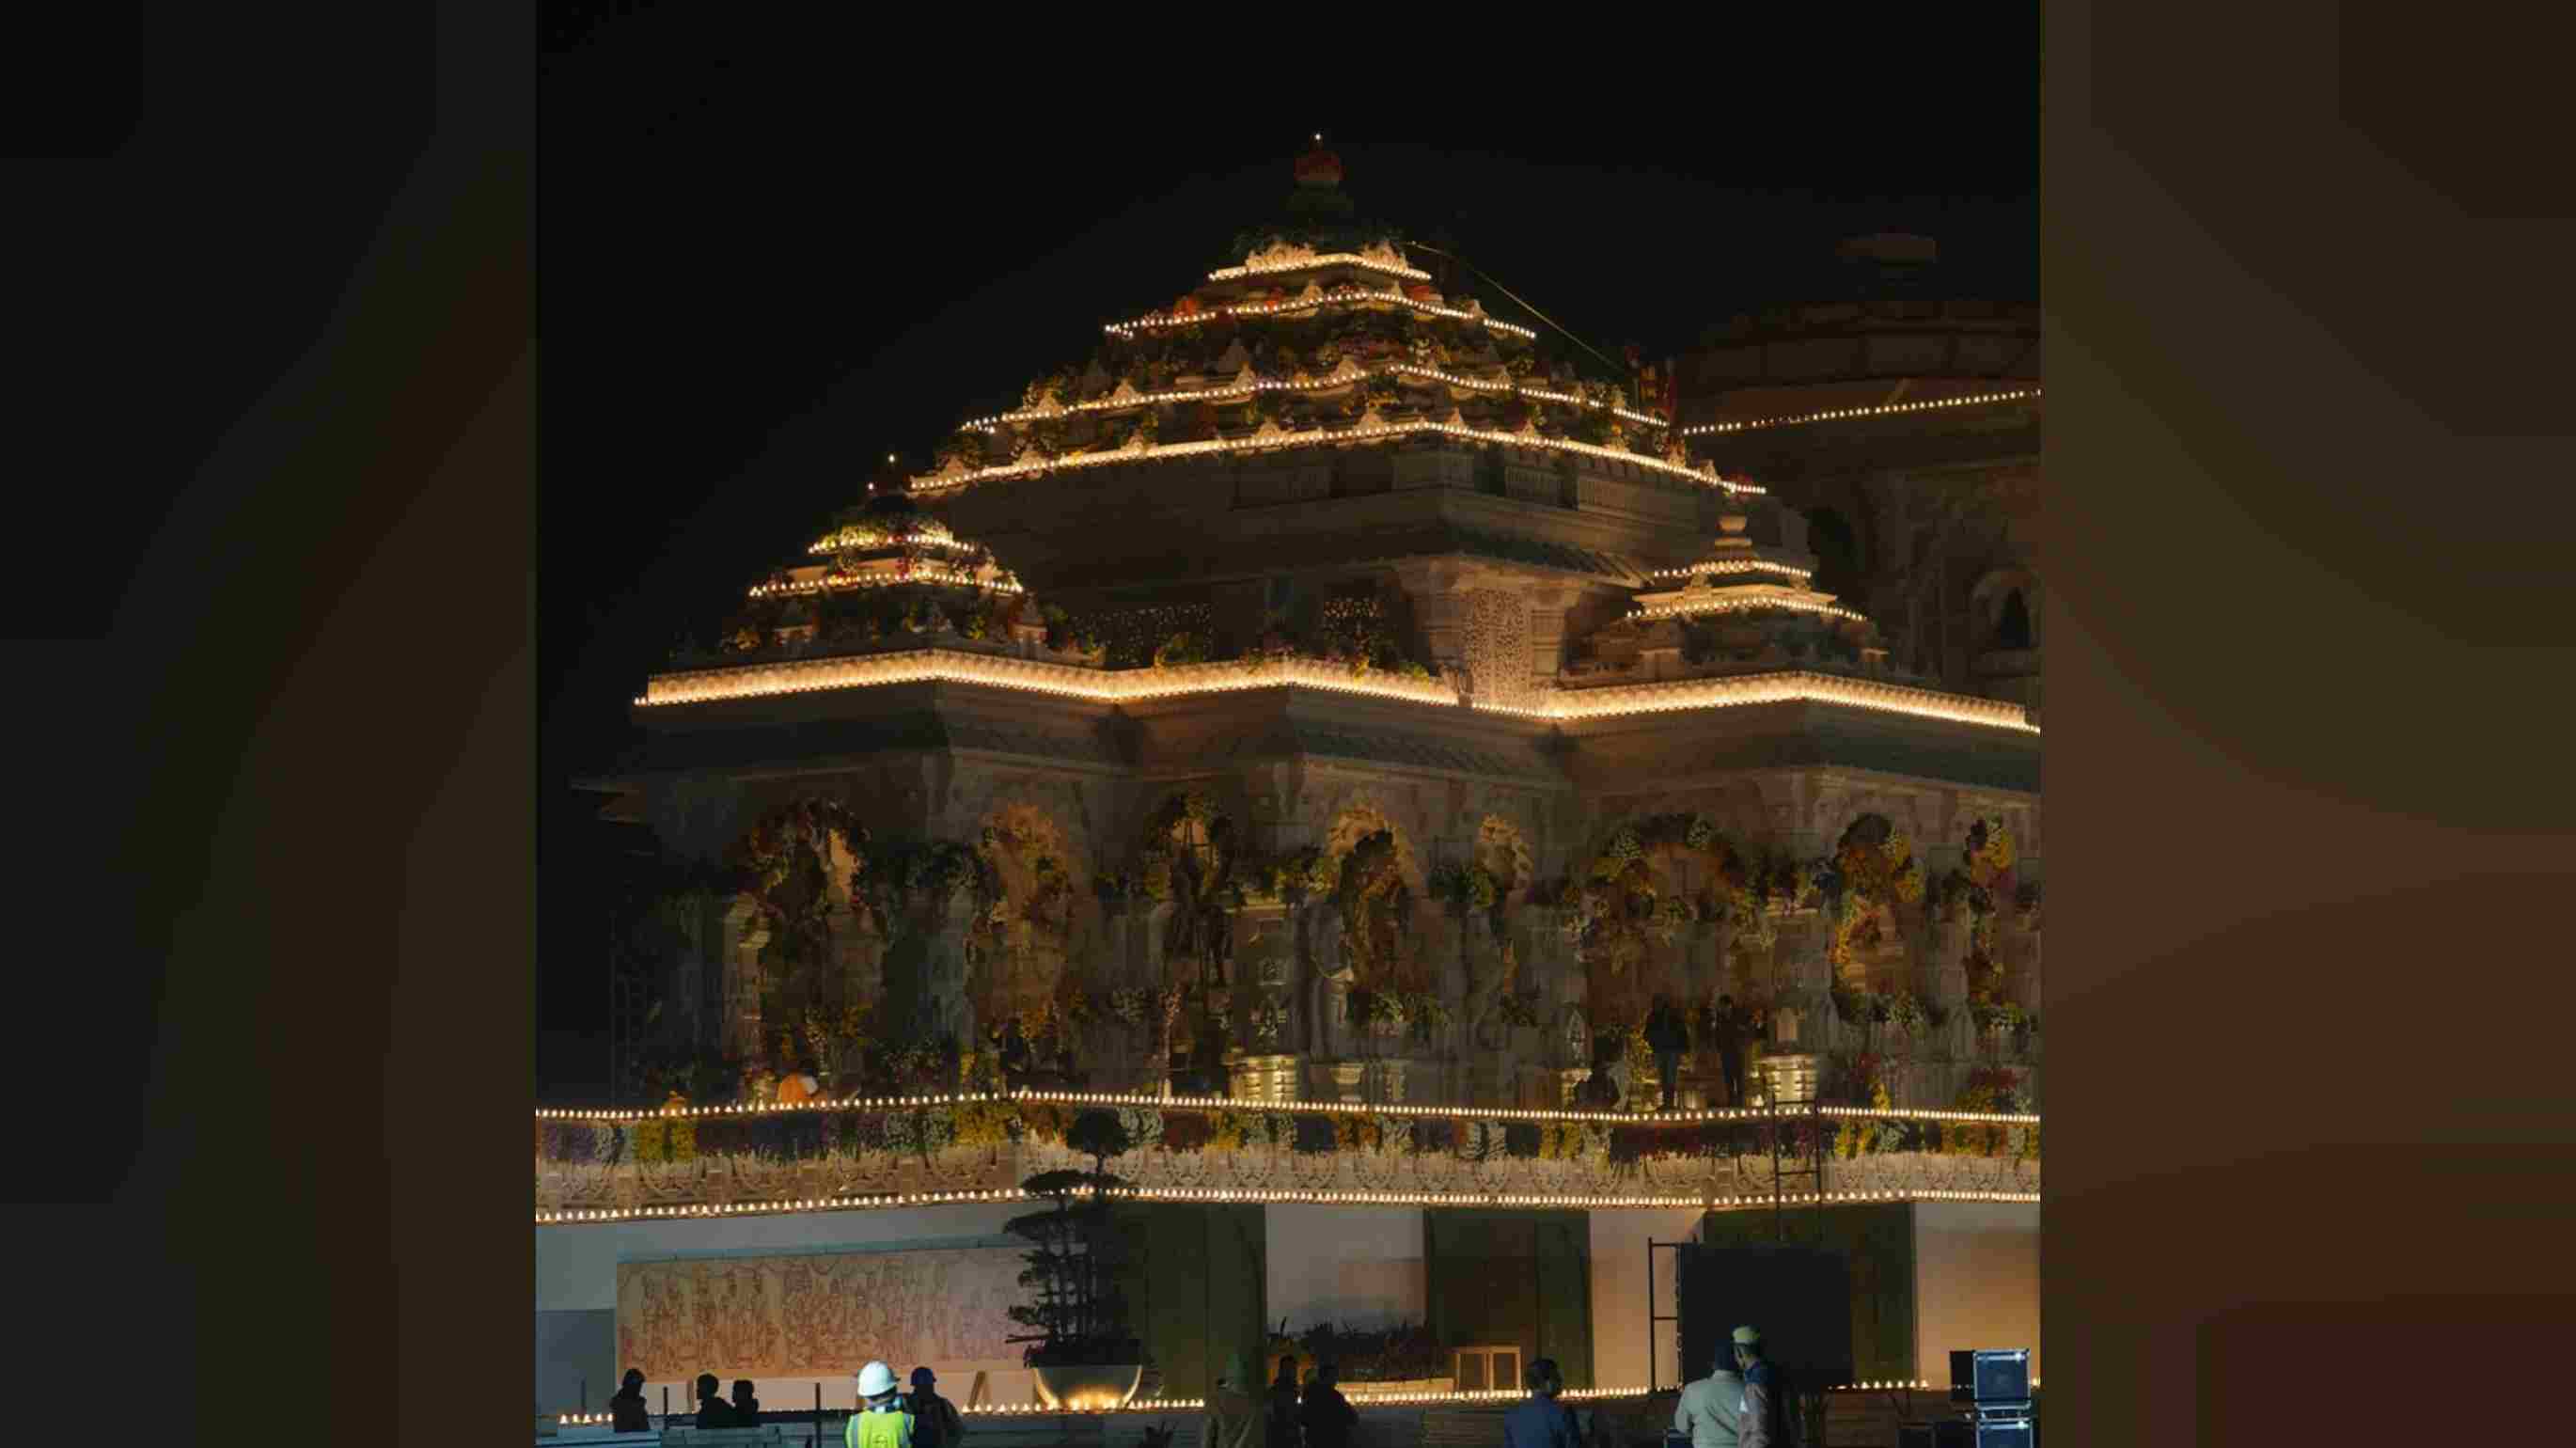 राम मंदिर प्राण प्रतिष्ठा कार्यक्रम: दस लाख दीपों से जगमग होगी राम नगरी अयोध्या